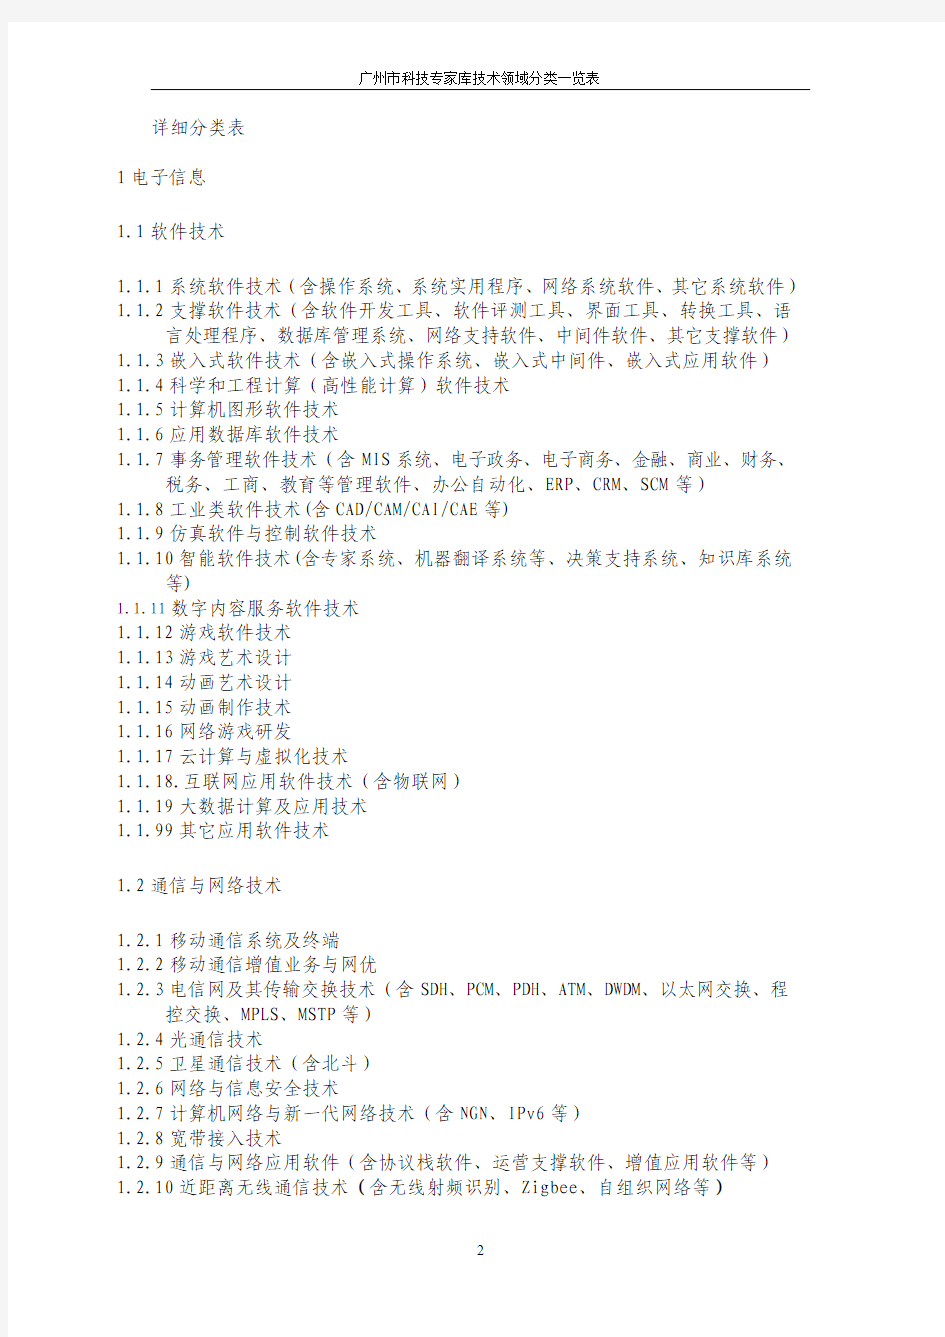 广州市科技专家库技术领域分类一览表